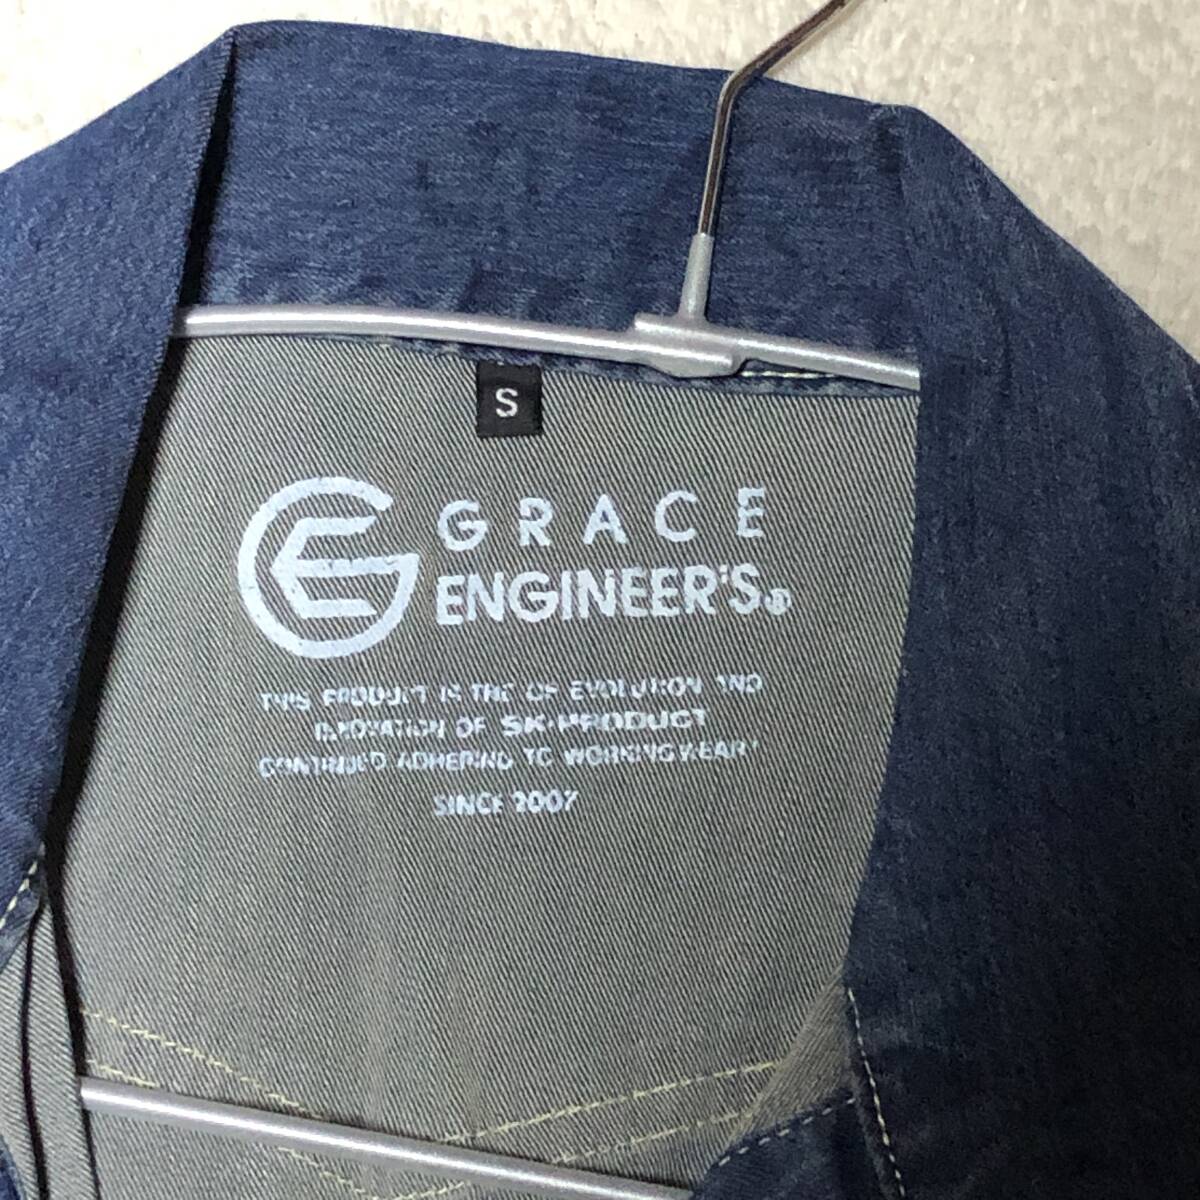 GRACE ENGINEER'S グレースエンジニアーズ デニム サロペット オーバーオール Sサイズの画像4